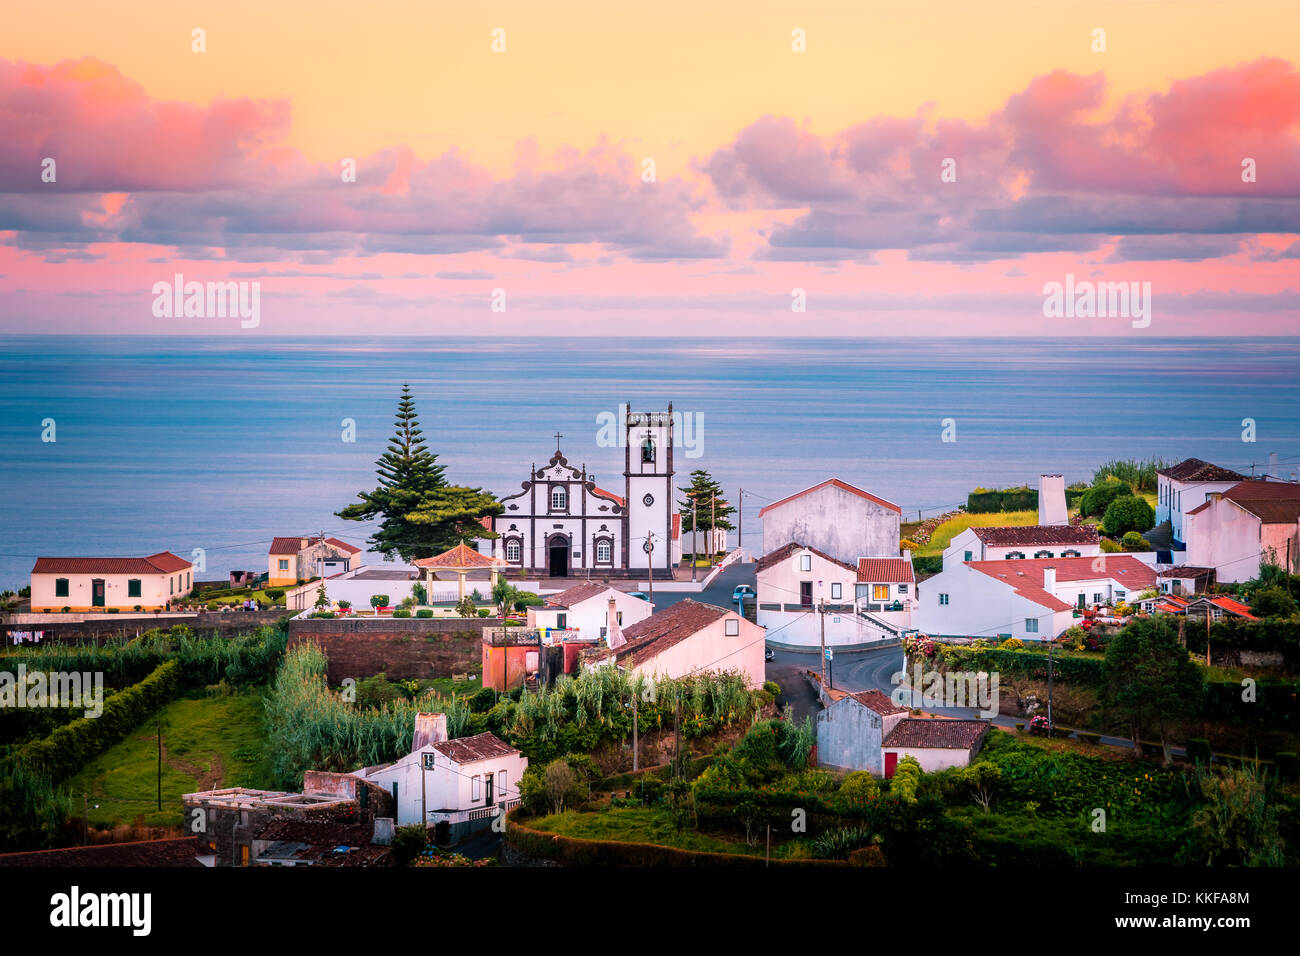 Di un bel colore rosa sunrise in un villaggio del nordeste, isola Sao Miguel, Azzorre, Portogallo Foto Stock